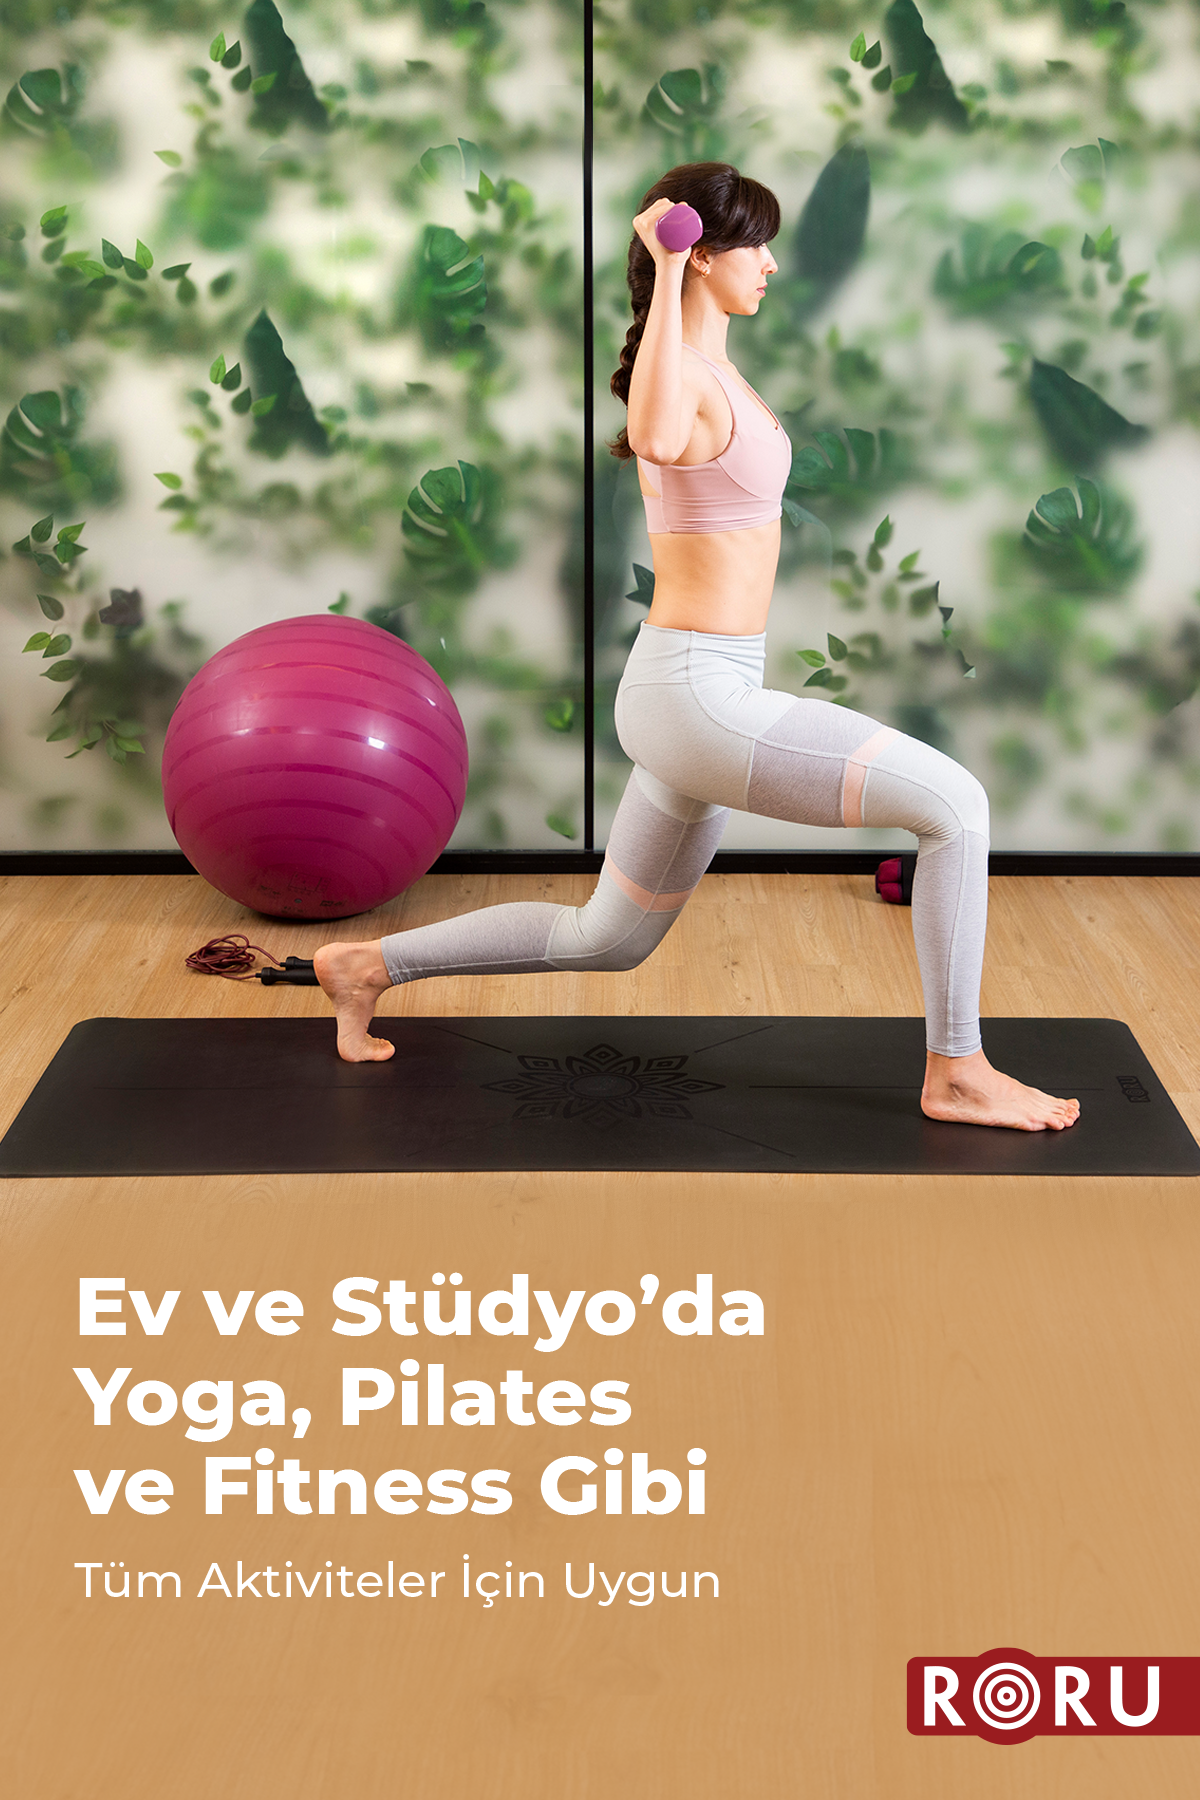 Roru Concept Sun Kaydırmaz Yoga Egzersiz Matı 183 x 68 cm 5 mm Kuru - Nemli Eller İçin, Doğal Kauçuk, Siyah